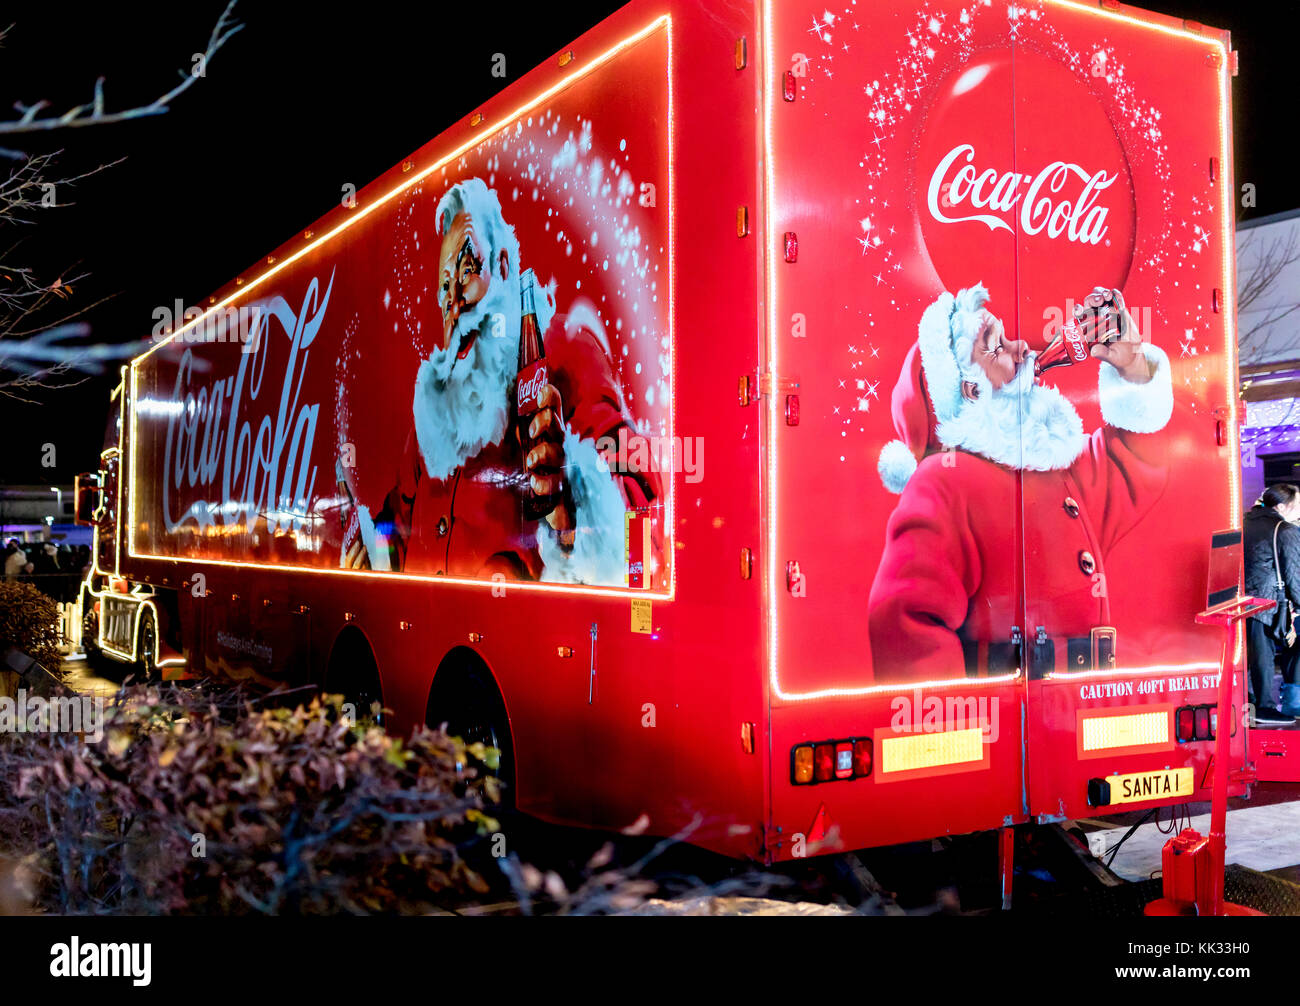 Coca Cola CC2191 Décoration de voiture Père Noël : : Maison